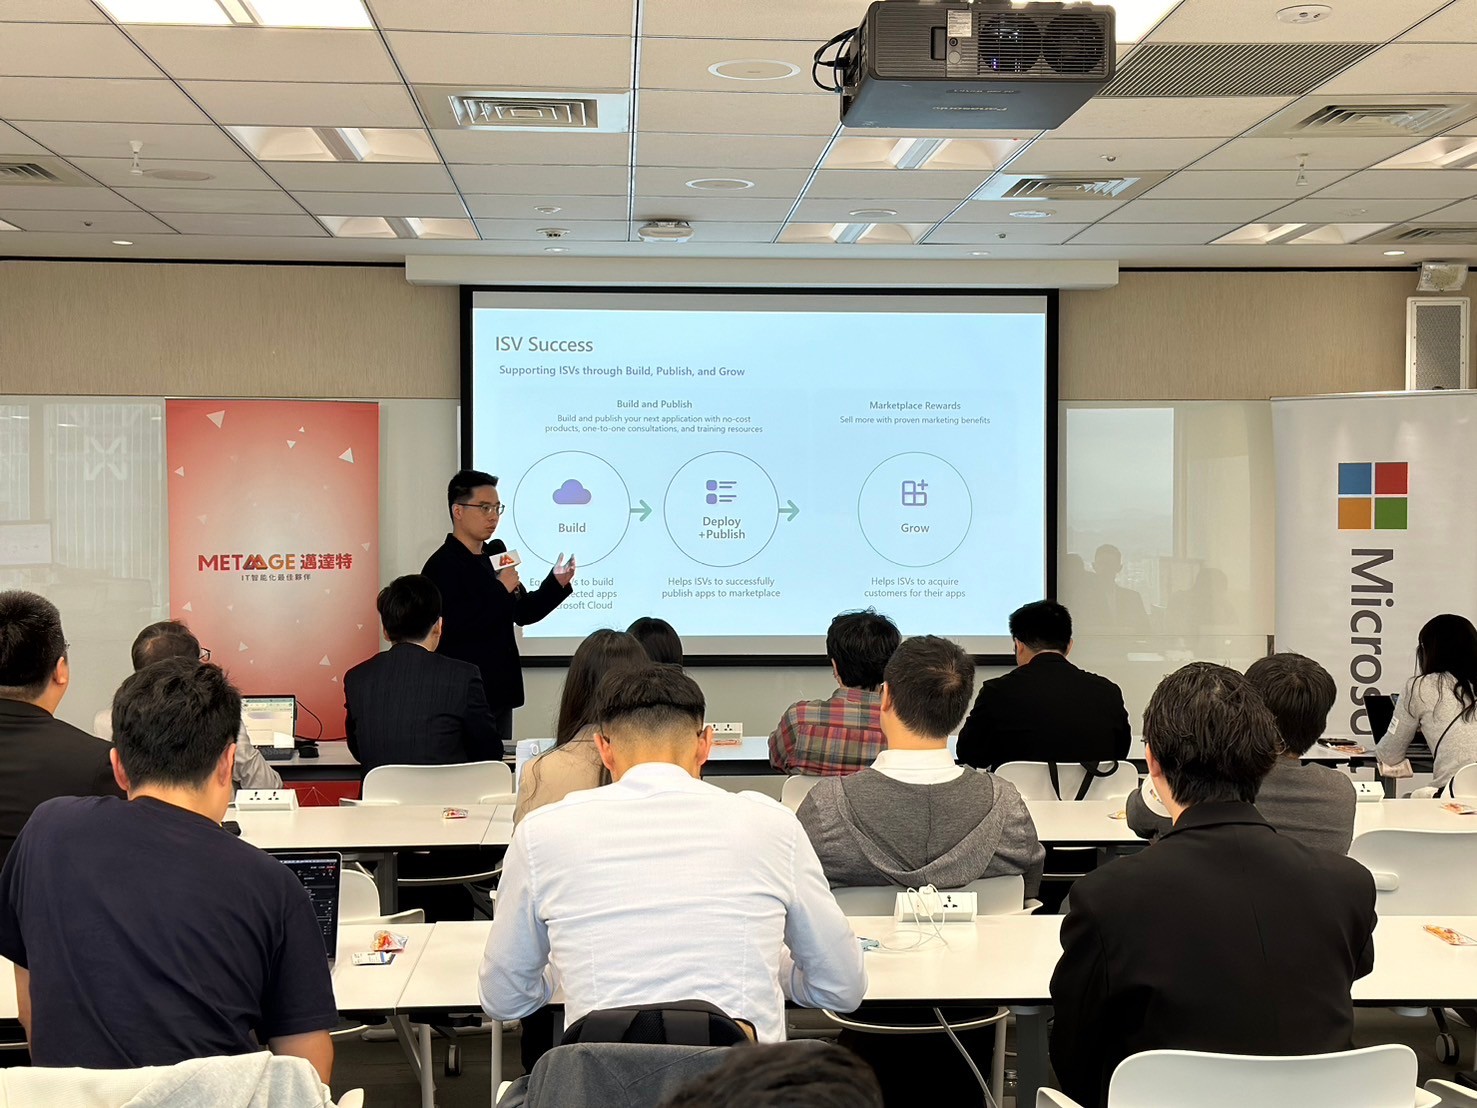 台灣微軟合作夥伴發展經理 吳秉霖 分享ISV轉型策略藍圖